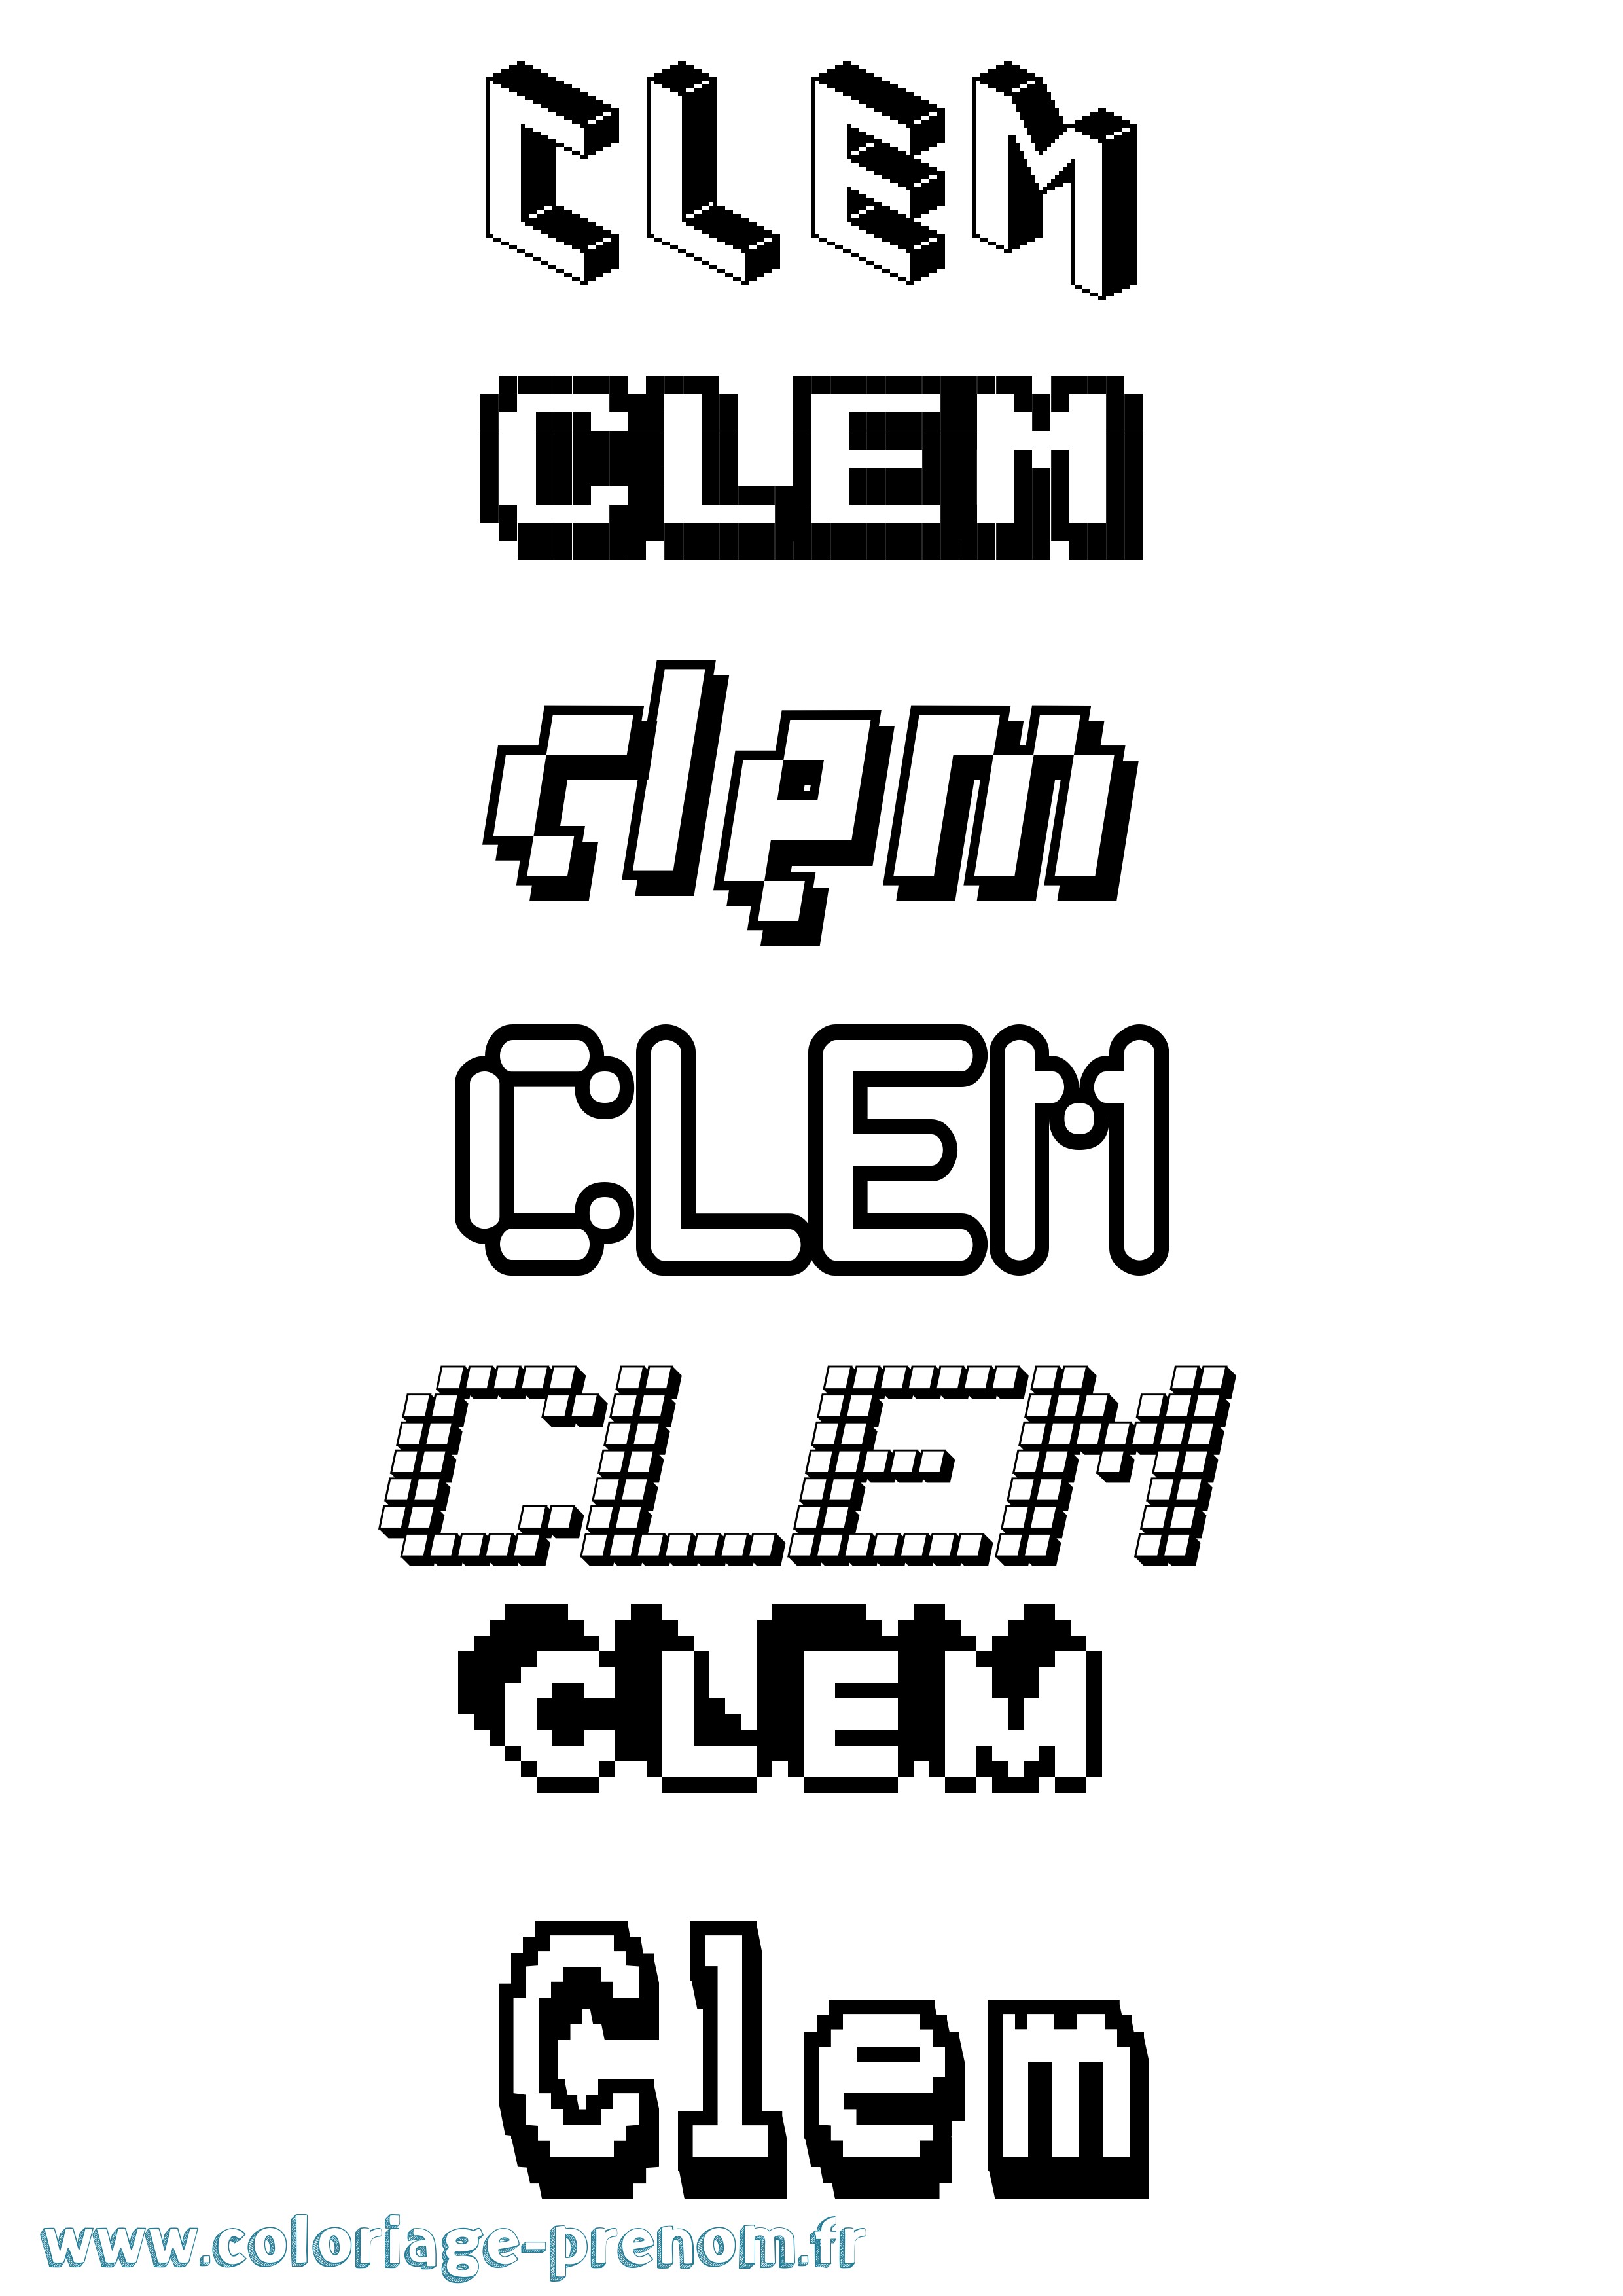 Coloriage prénom Clem Pixel